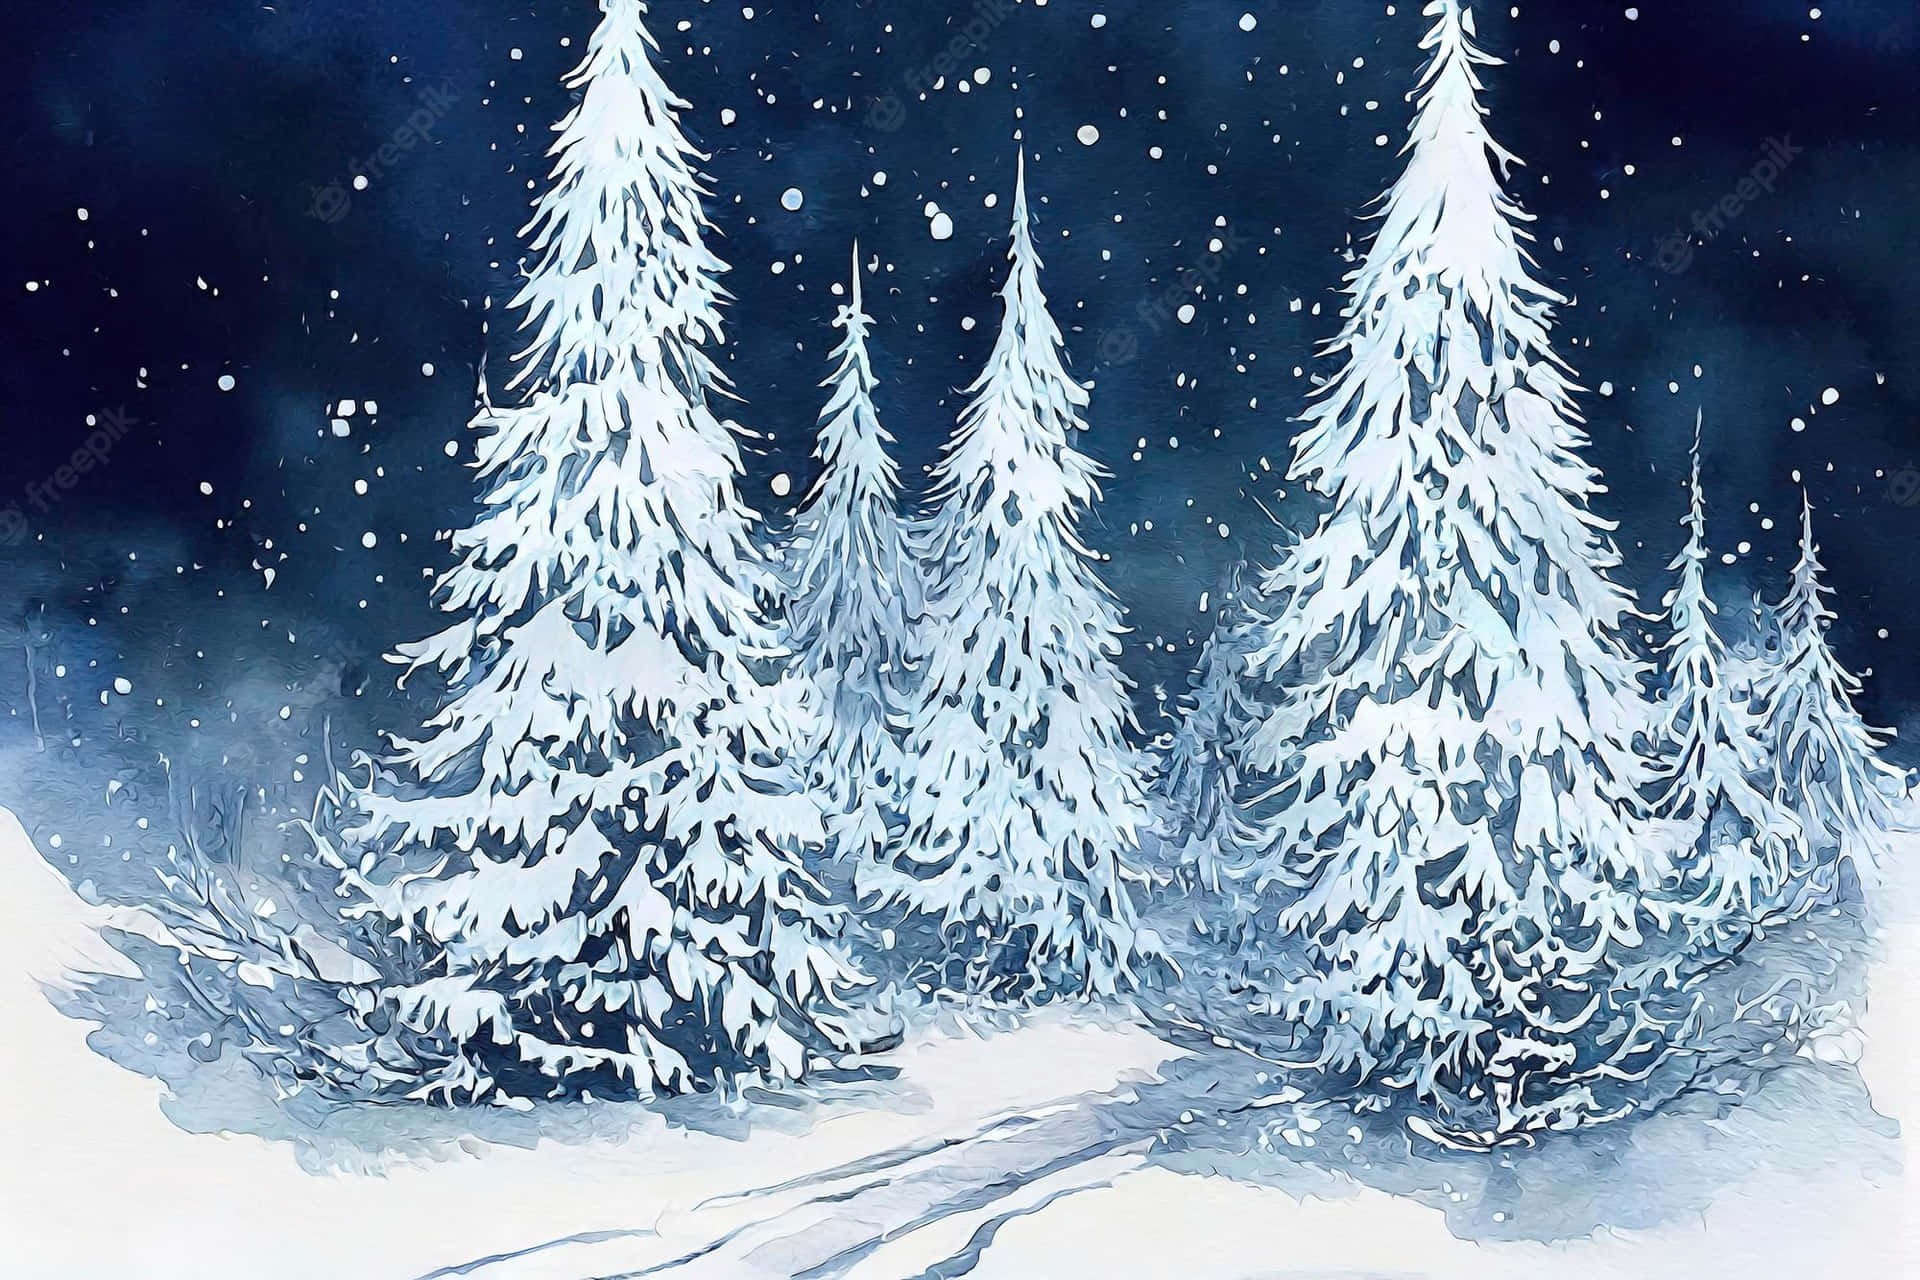 Feiernsie Diese Festliche Jahreszeit Und Lassen Sie Sich Von Dem Charme Des Weihnachtswinterwunderlandes Mitreißen! Wallpaper